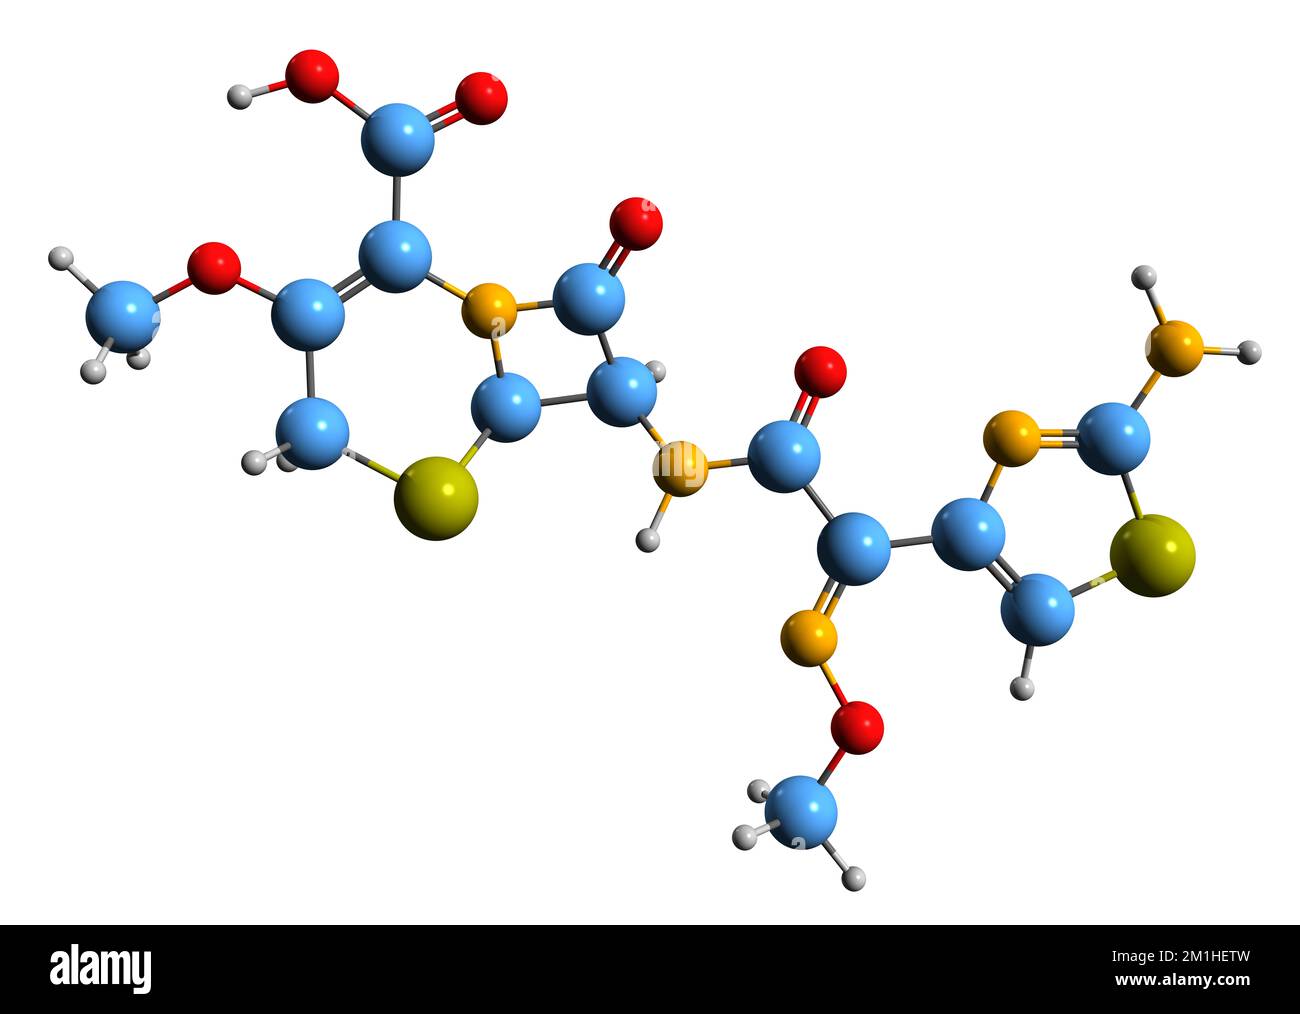 3D-Bild der Cefpodoxim-Skelettformel - molekularchemische Struktur eines auf weißem Hintergrund isolierten Cephalosporin-Antibiotikums Stockfoto